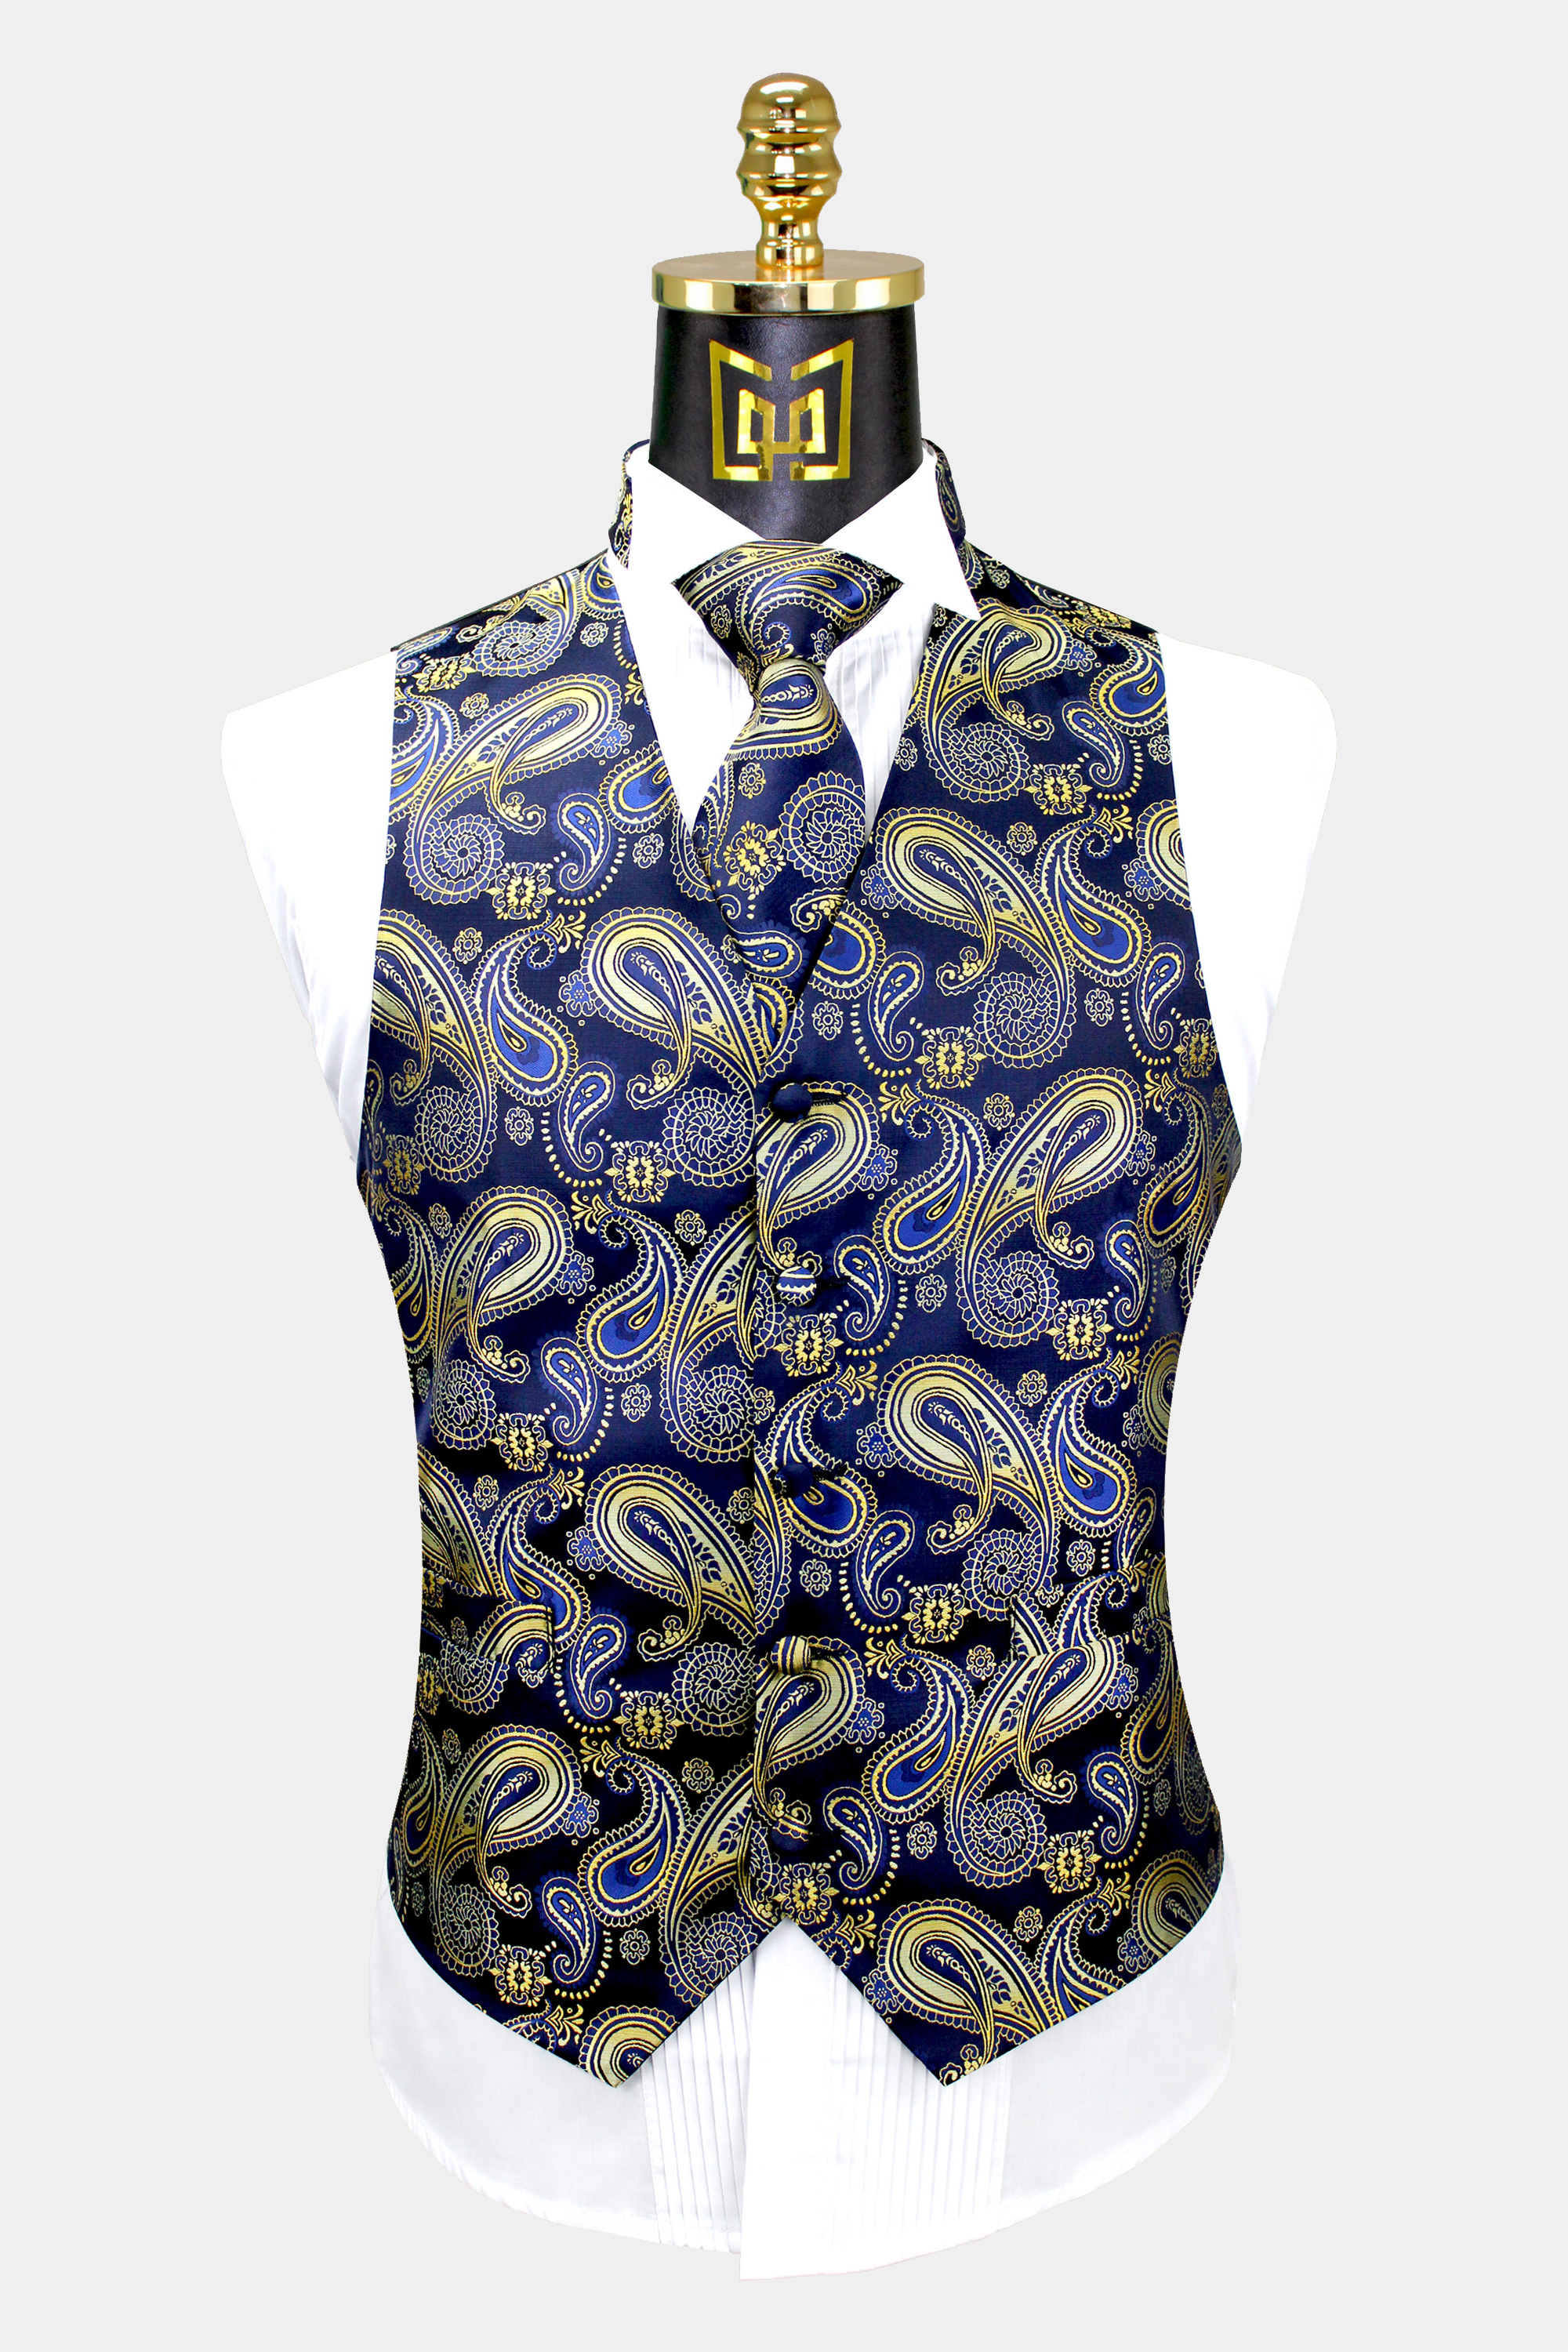 Navy-Blue-and-Gold-Paisley-Vest-Tie-Set-Groom-Wedding-Tuxedo-Vest-from-Gentlemansguru.com_